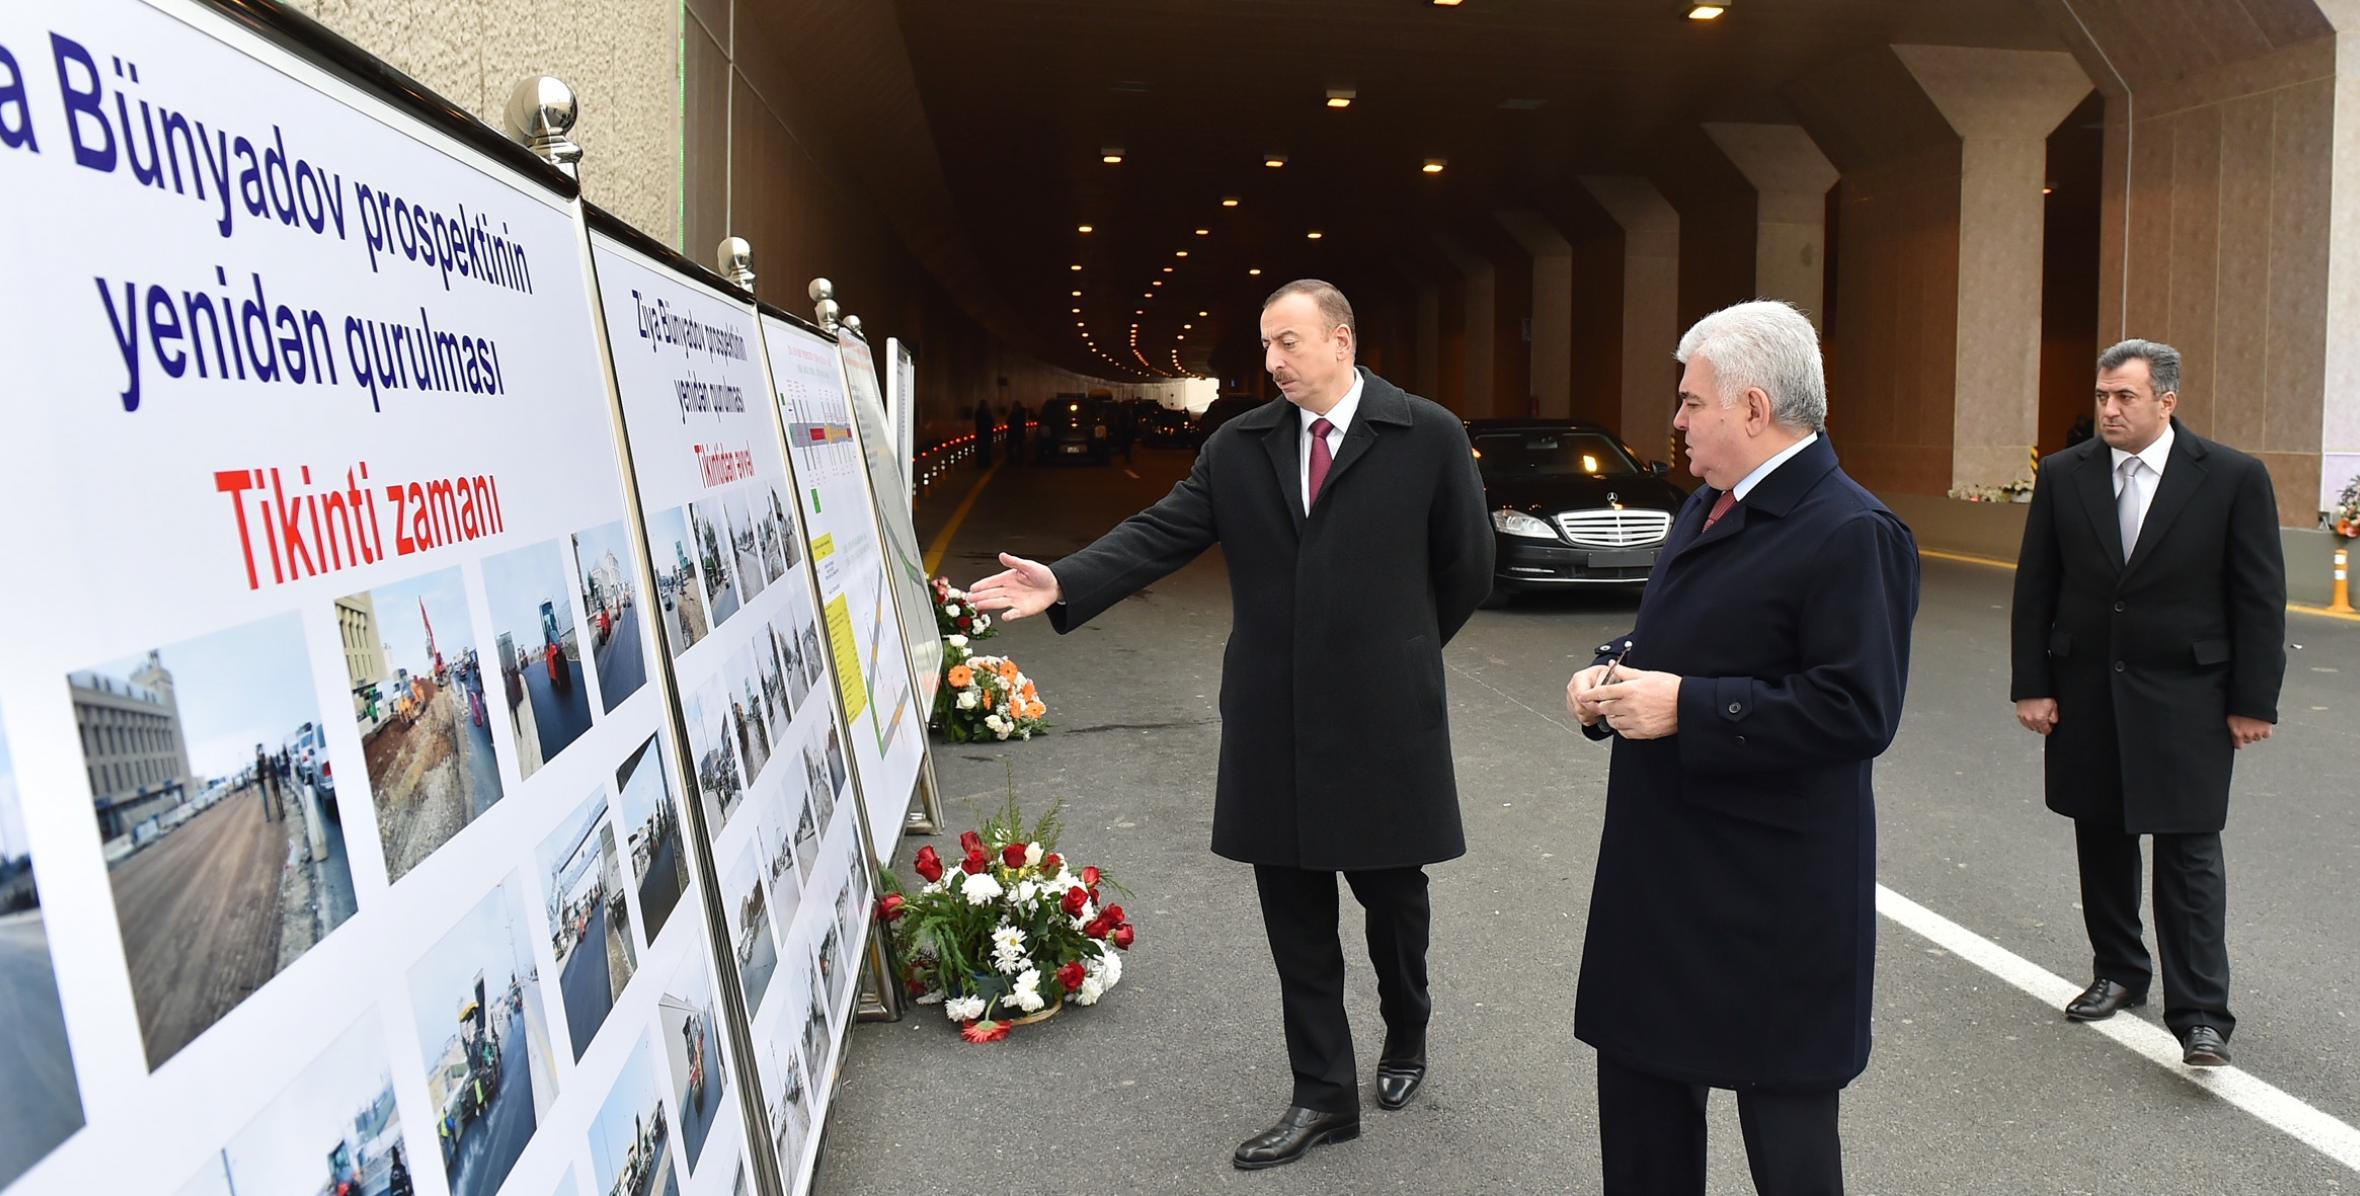 Ильхам Алиев принял участие в открытии после реконструкции проспекта Зии Буньятова в Баку